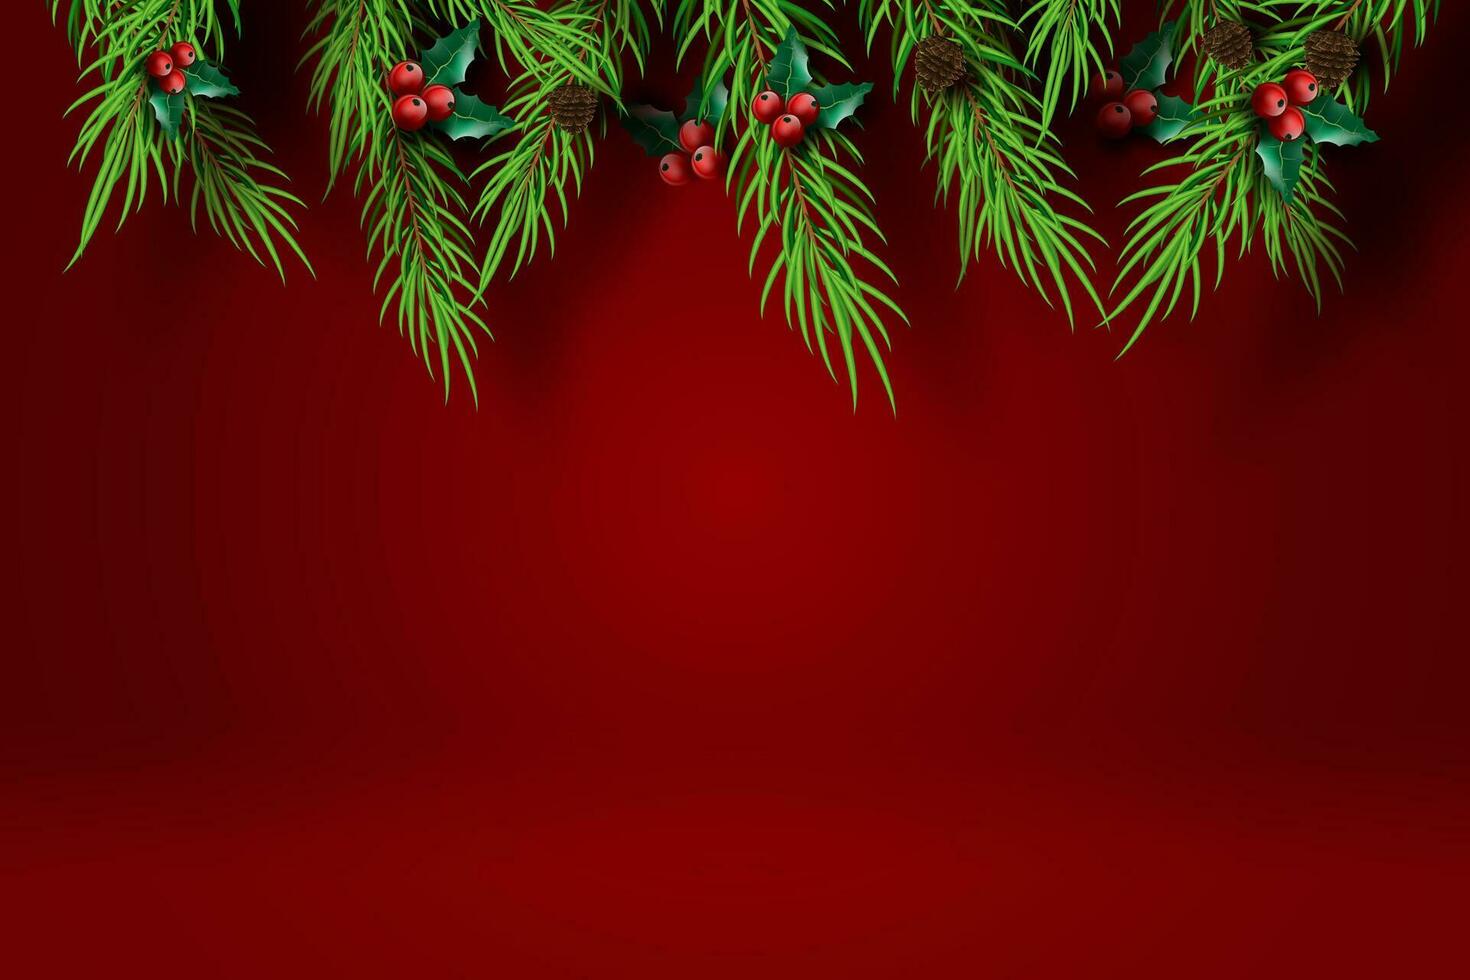 papper konst av glad jul och Lycklig ny år med röd tona bakgrund.kreativ minimal tall träd och järnek träd för hälsning kort.semester festival fest dekoration element grafisk poster.vector vektor